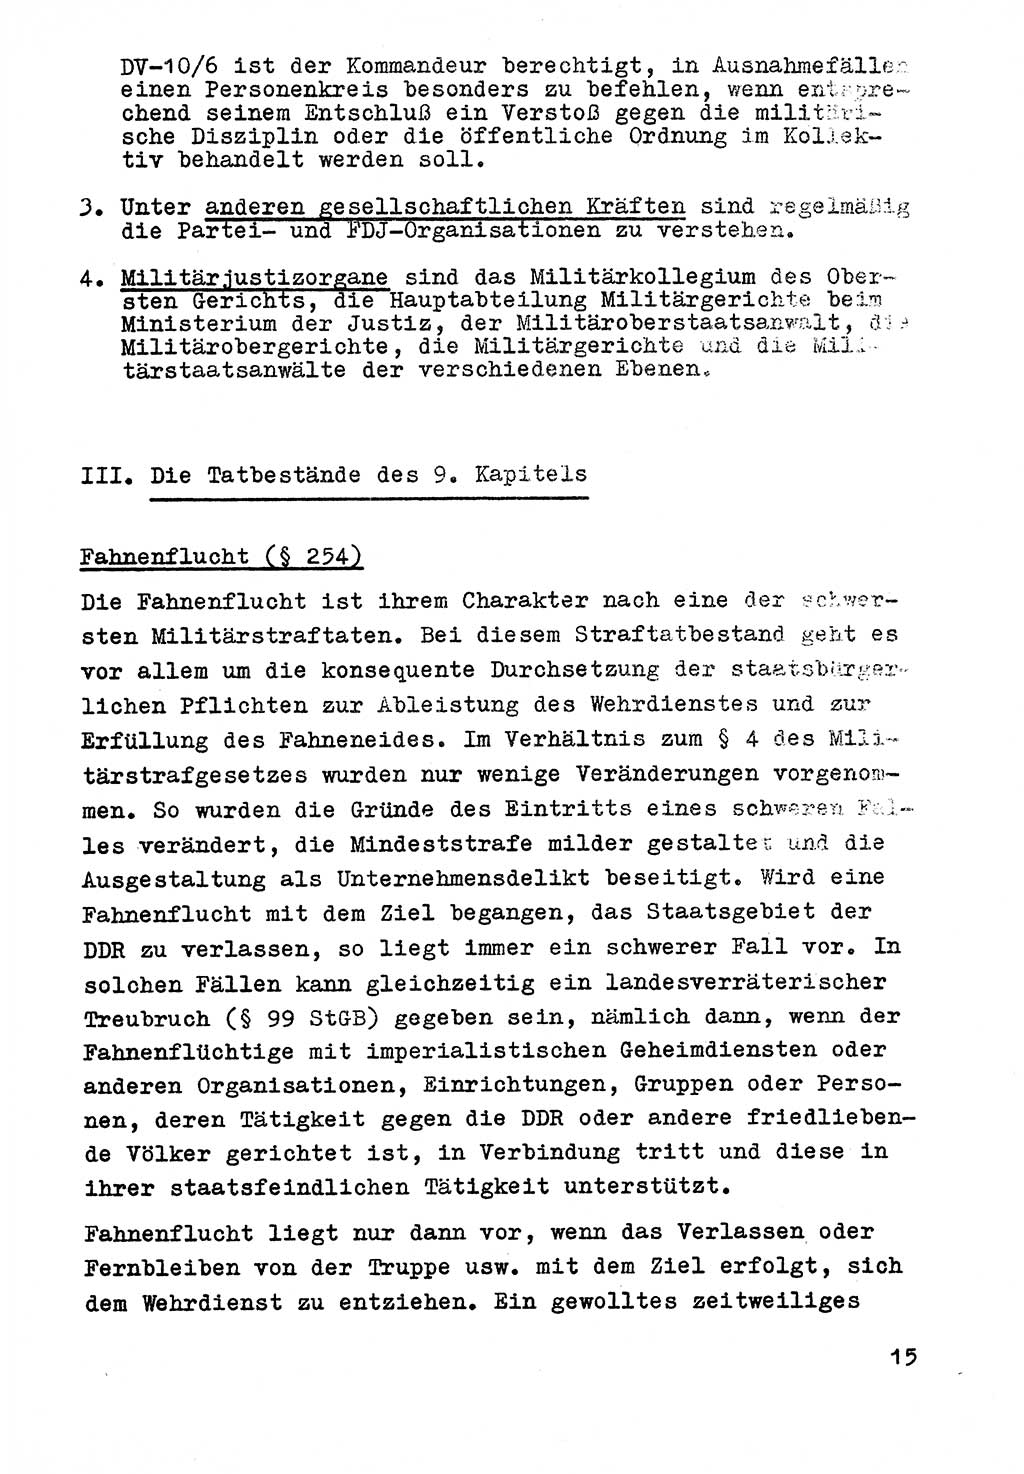 Strafrecht der DDR (Deutsche Demokratische Republik), Besonderer Teil, Lehrmaterial, Heft 9 1969, Seite 15 (Strafr. DDR BT Lehrmat. H. 9 1969, S. 15)